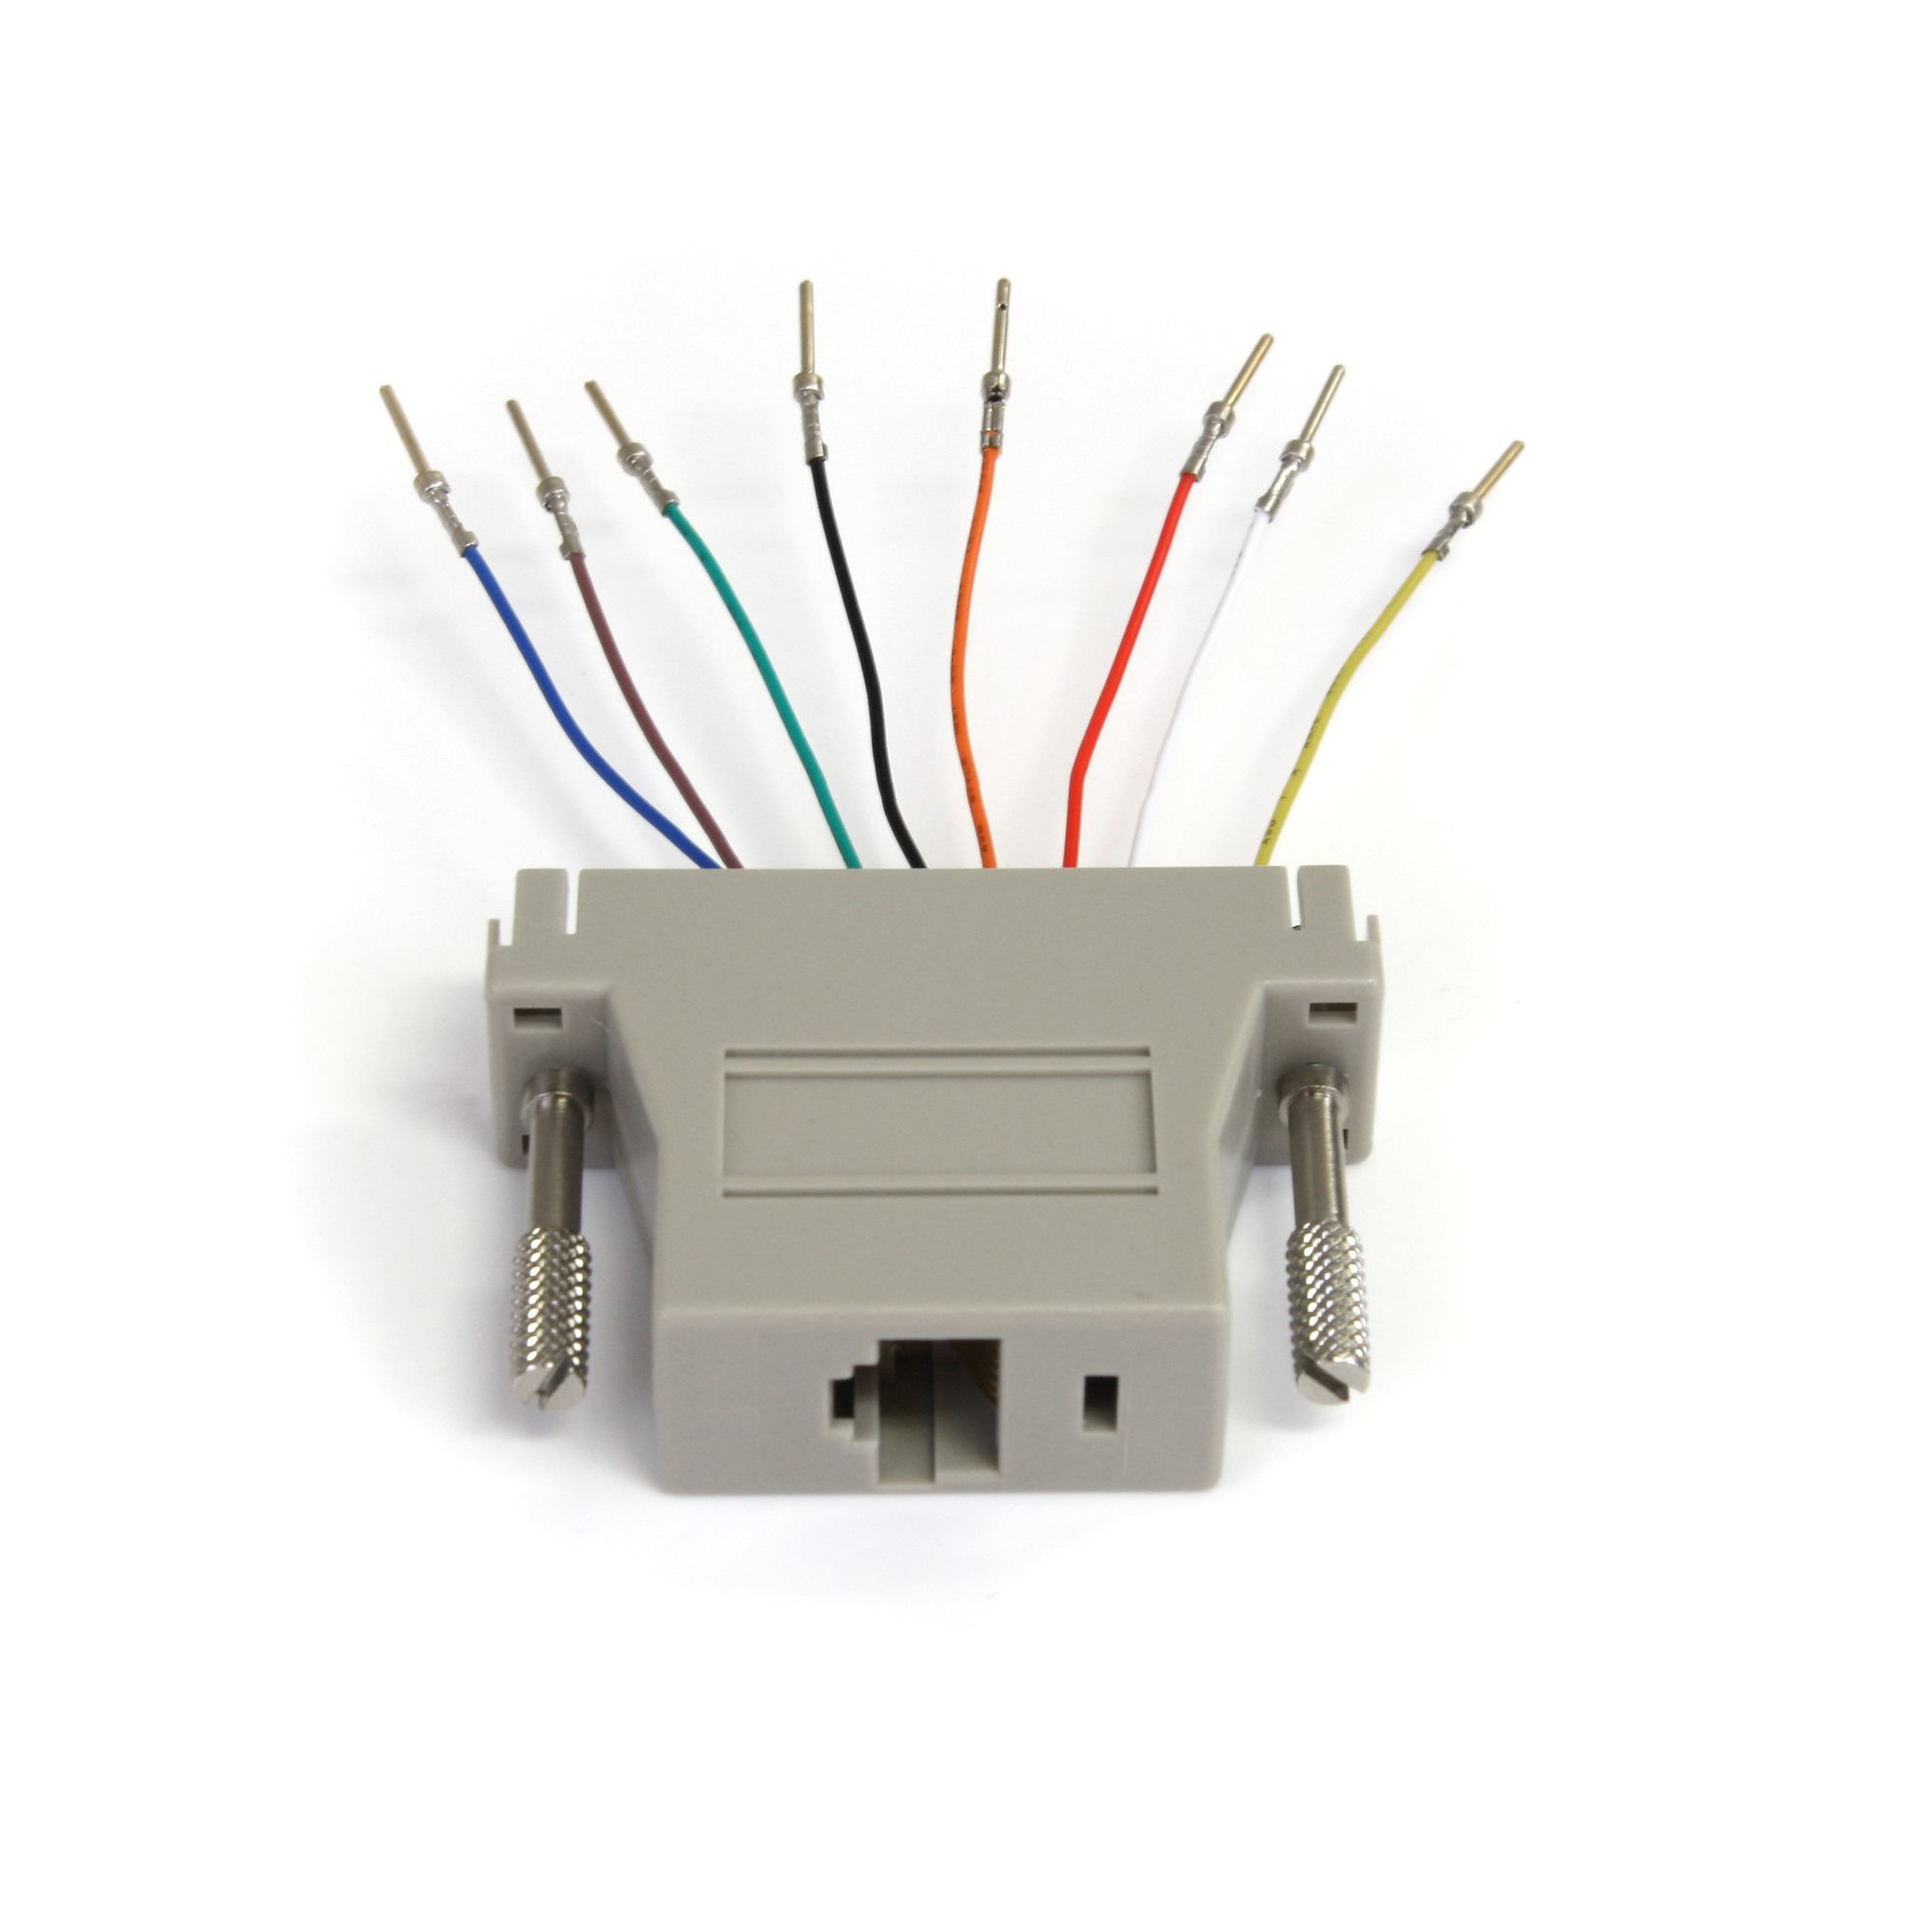 StarTech.com (RUSB2ALT50CMBC) Connector Cable – Network Hardwares